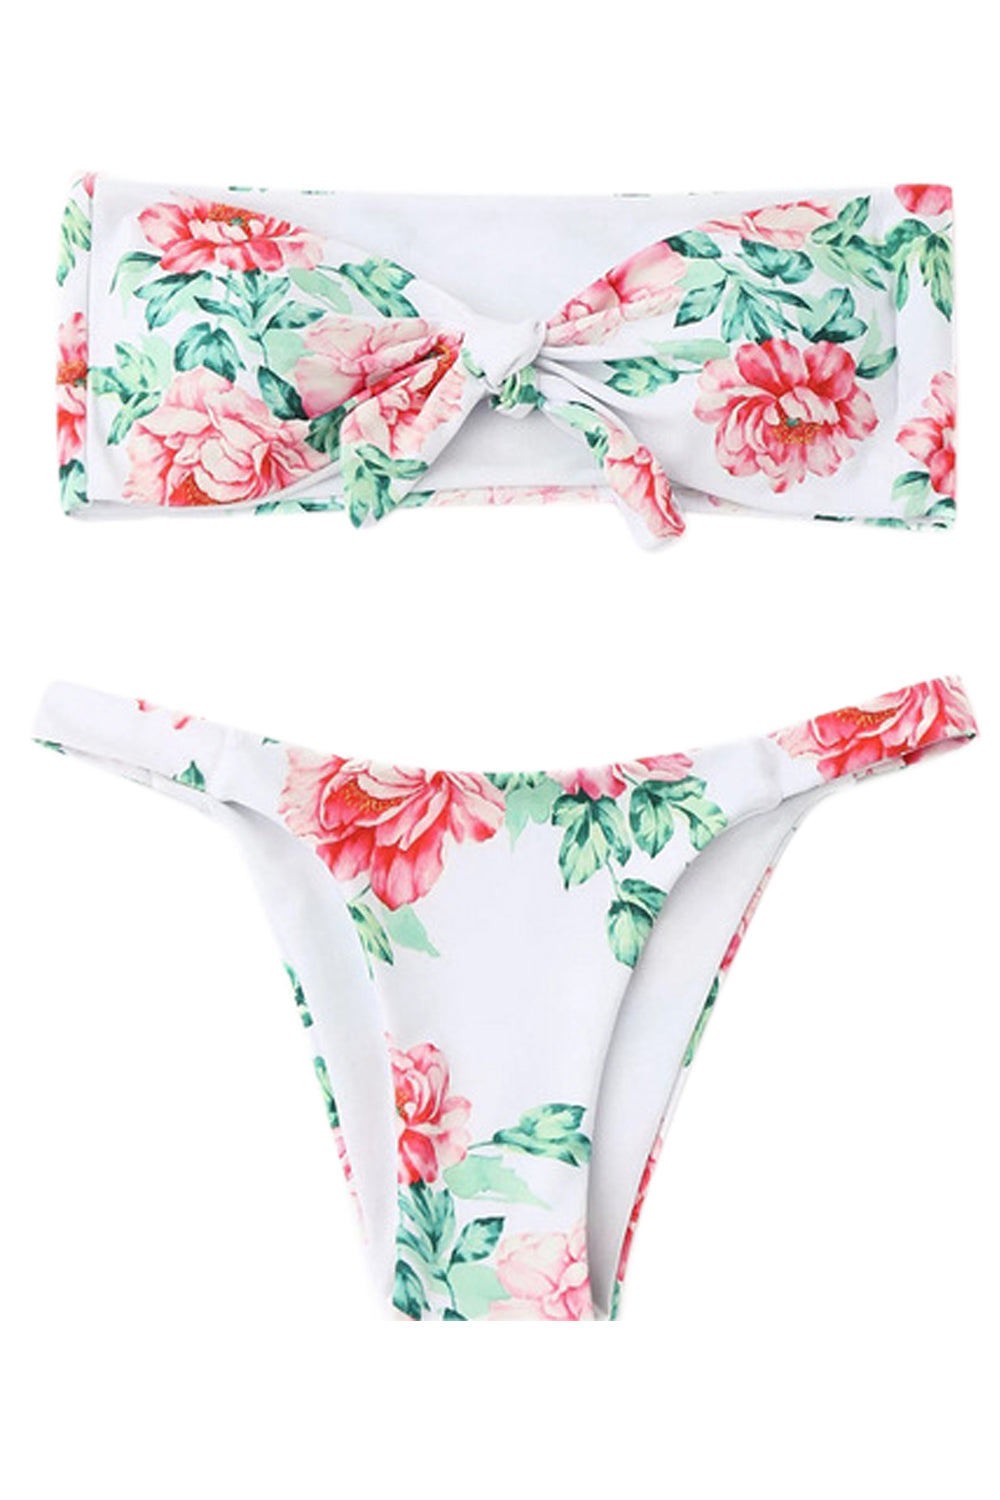 Iyasson Charming Floral printing Bikini Set